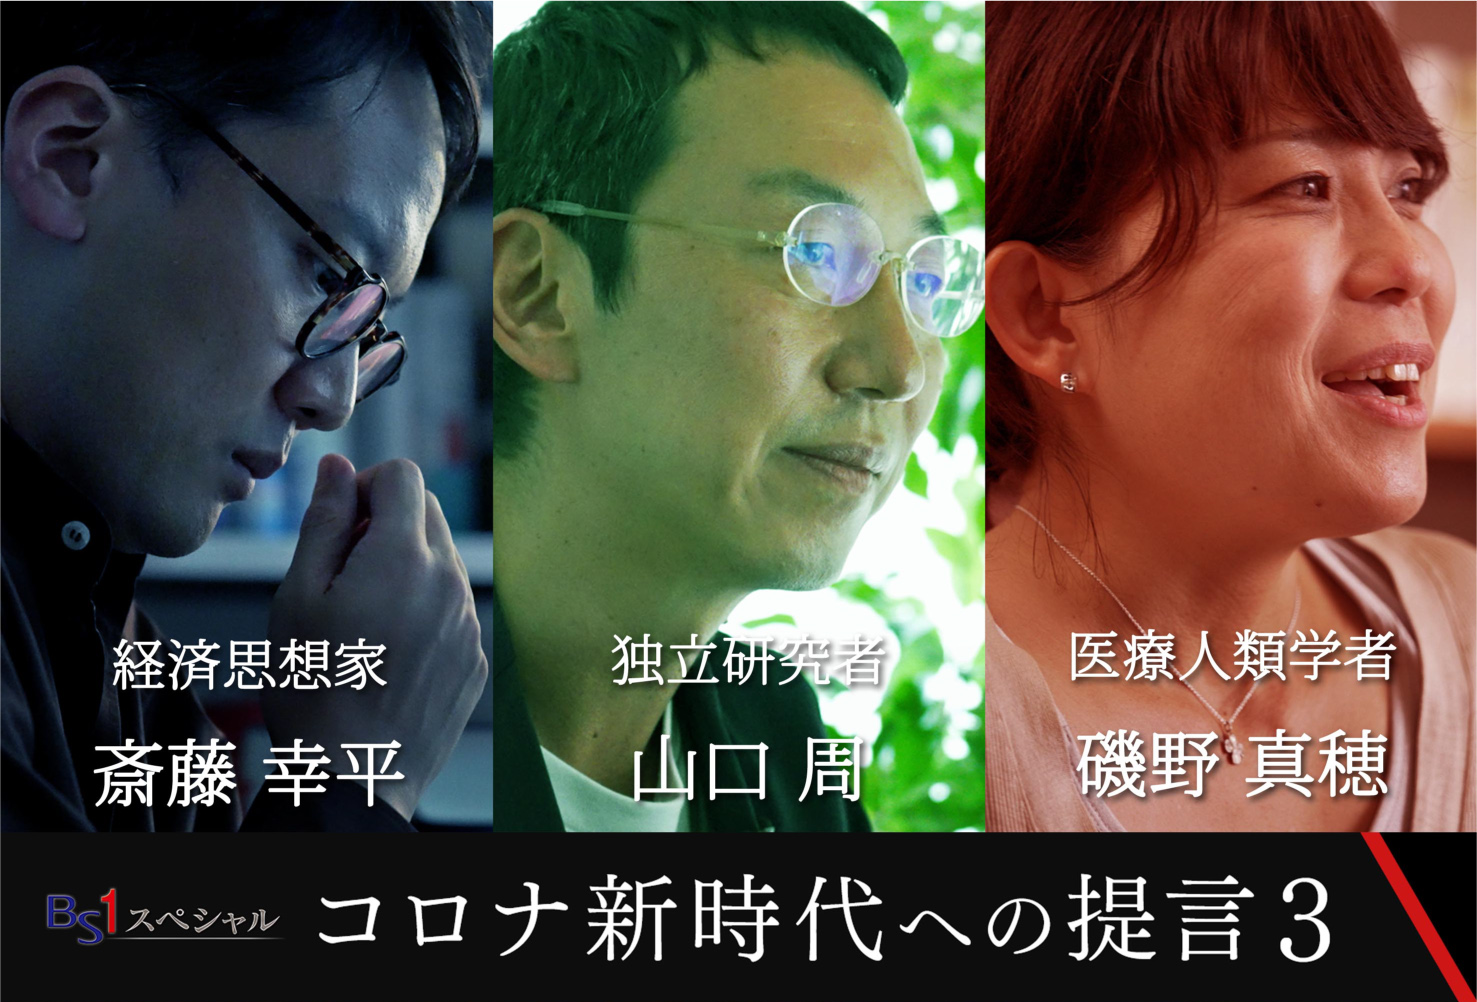 NHK BS1スペシャル「コロナ新時代への提言3 それでも、生きてゆける社会へ」